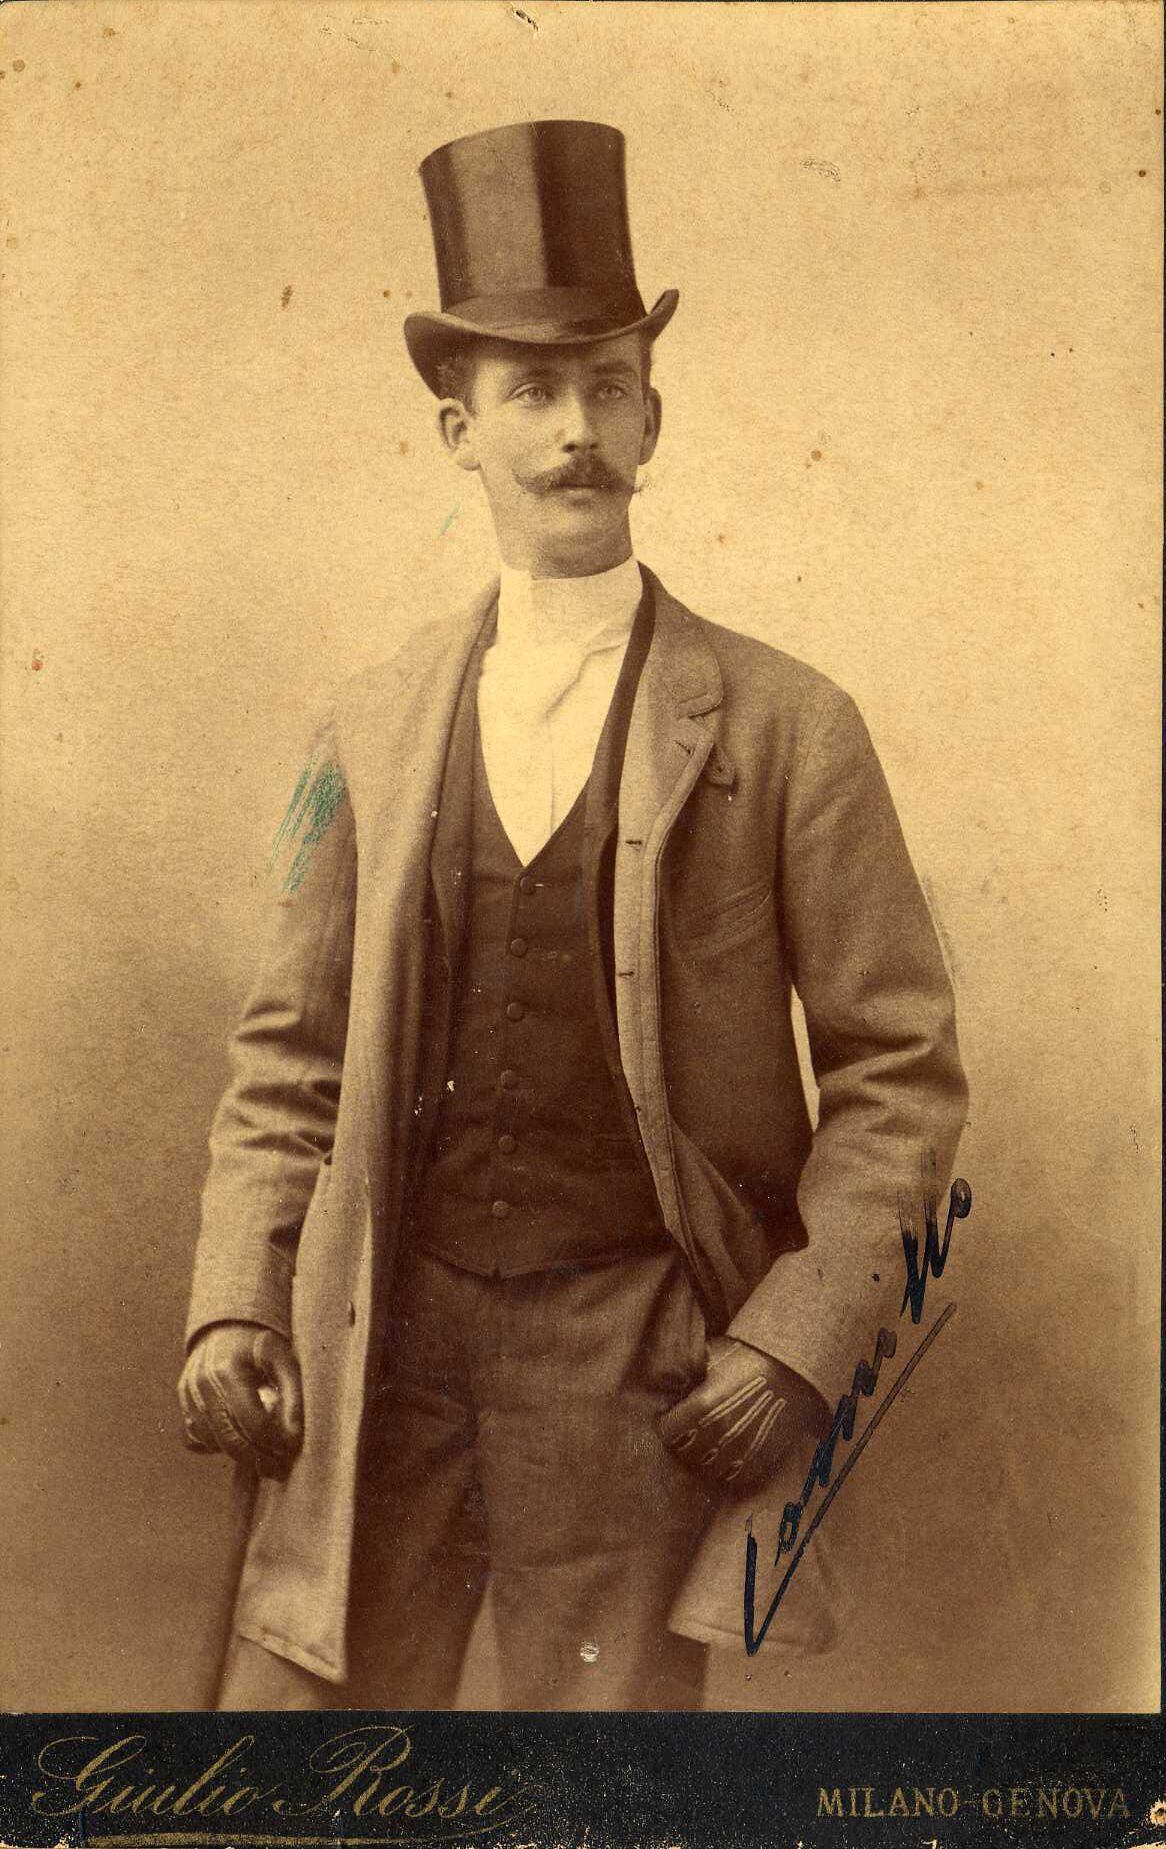 Camillo Negroni de joven (hacia 1886) en pose académica con sombrero de copa. Fotografía proporcionada por el autor del libro 'Negroni Cocktail: Una leggenda italiana' (Giunti, 2015).